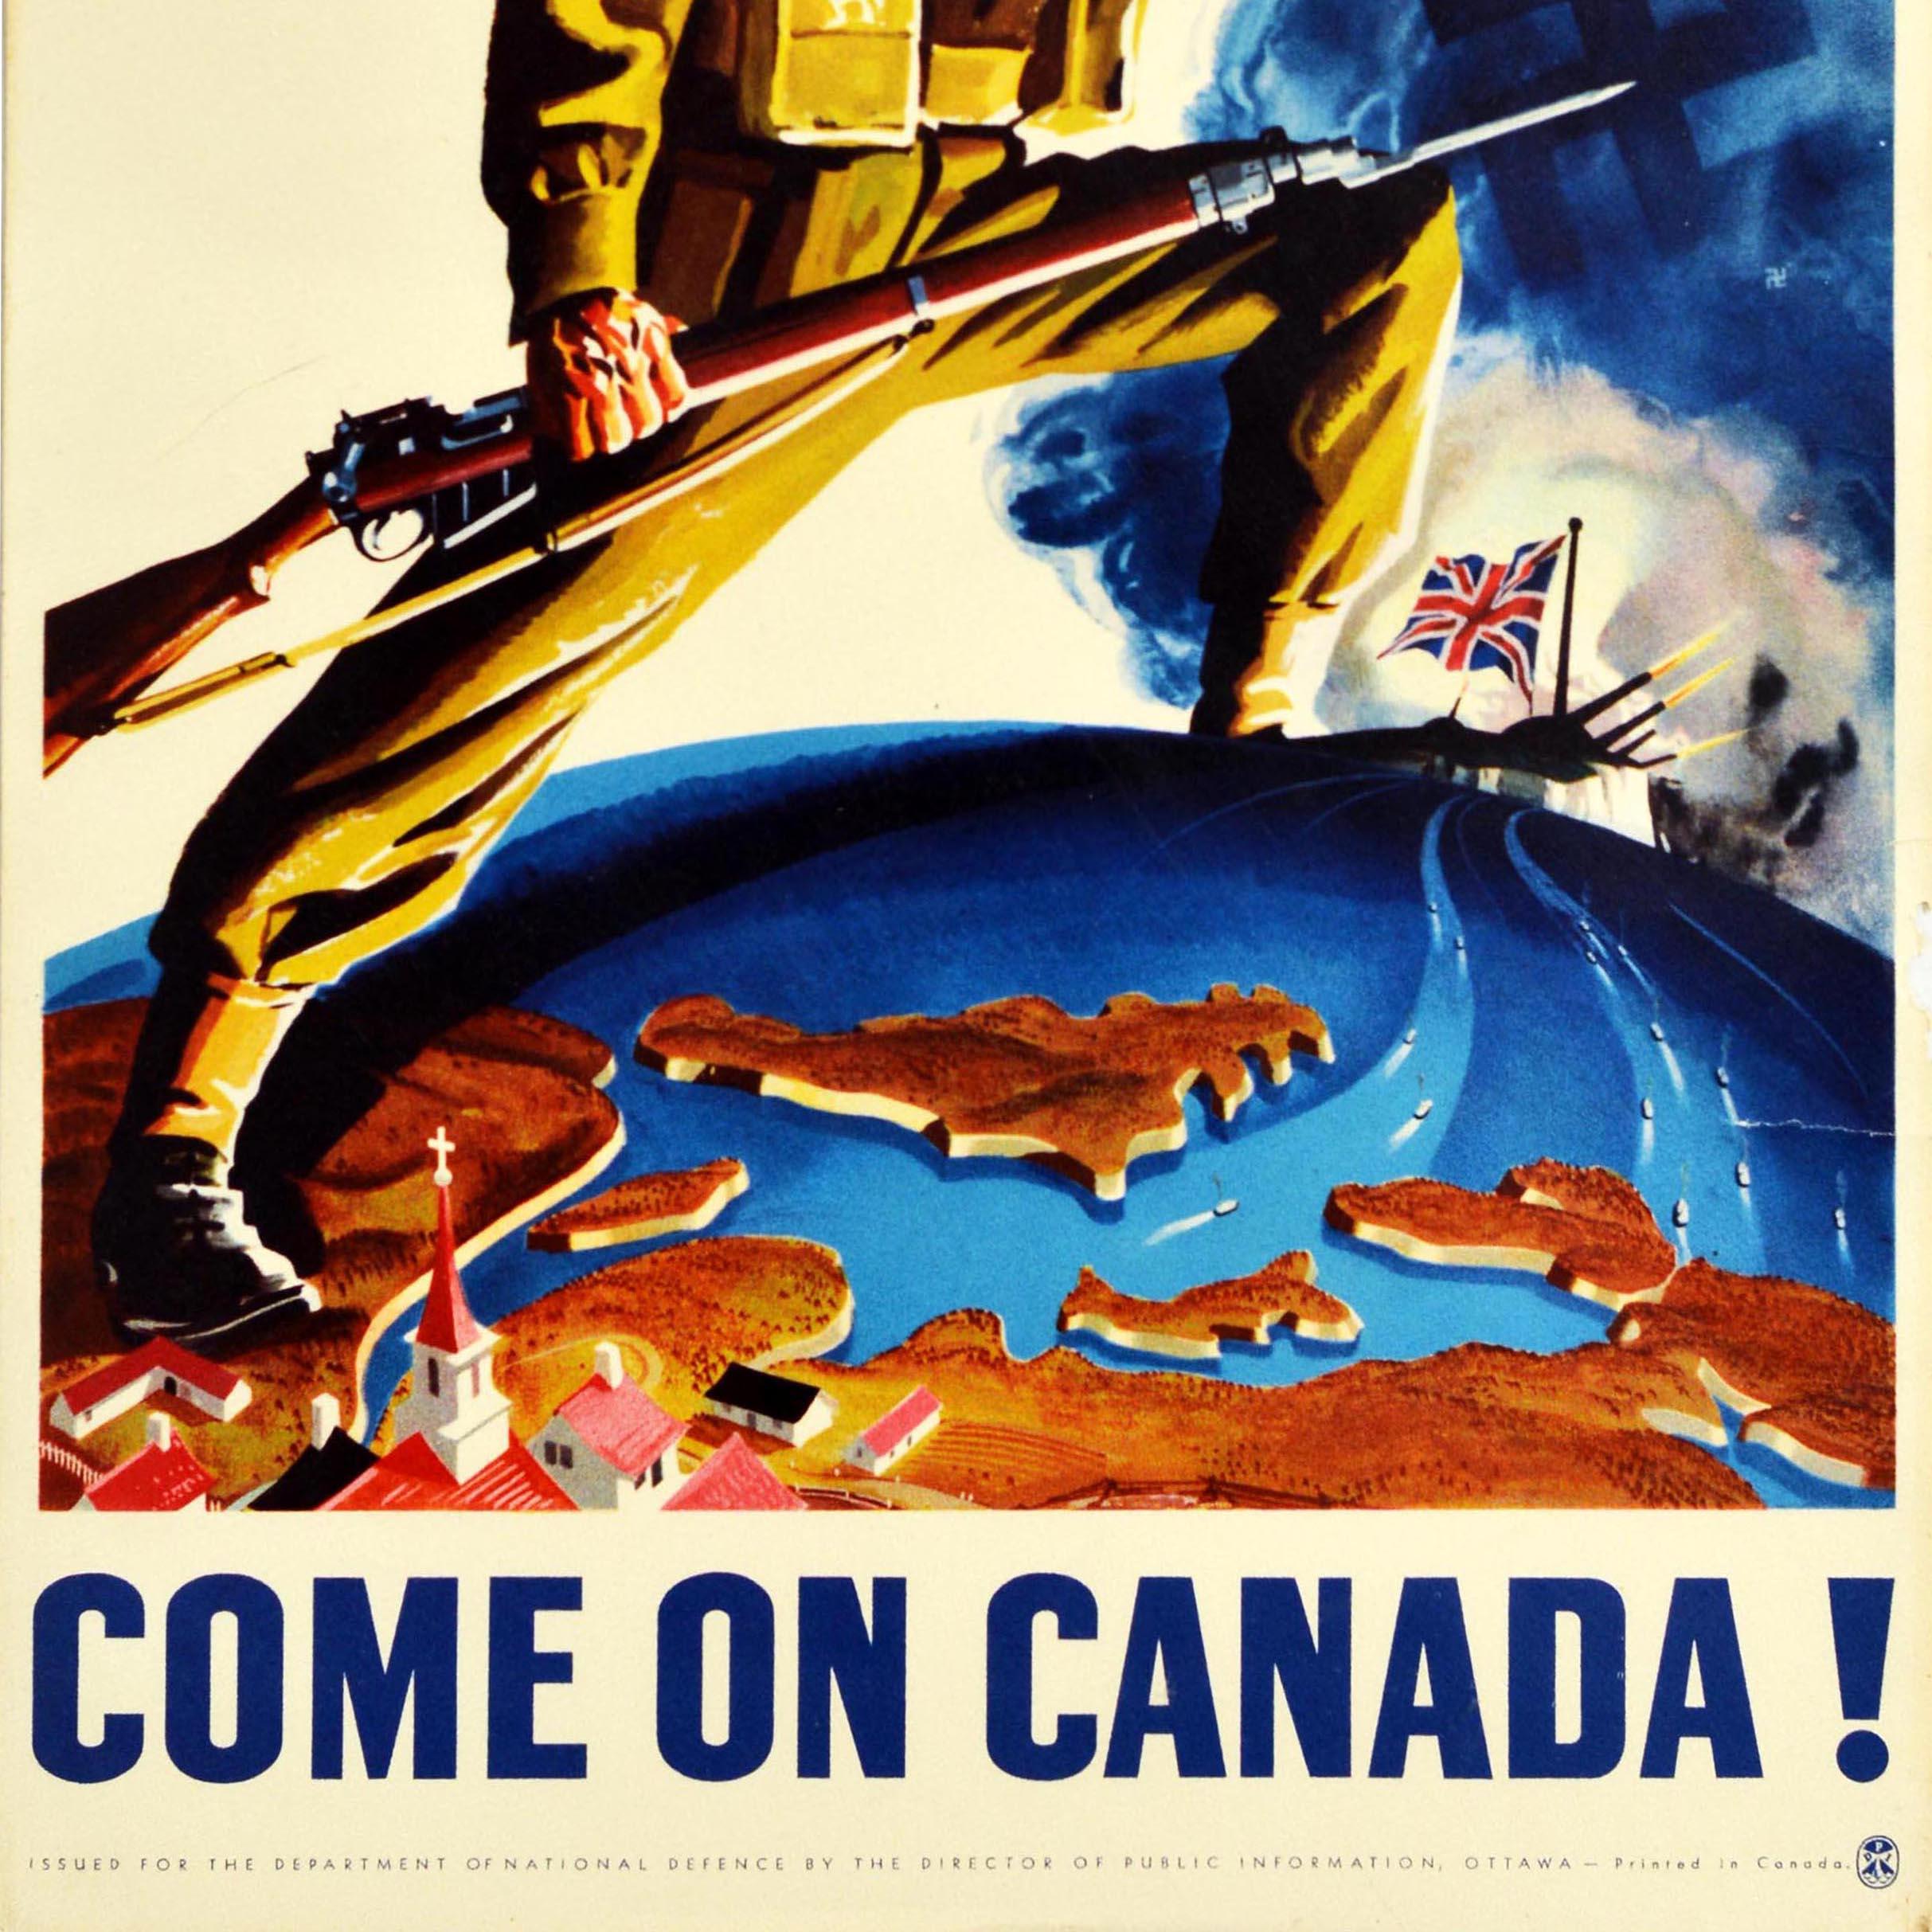 Originalplakat aus dem Zweiten Weltkrieg - Lick Them Over There! Komm schon Kanada! - mit einem dramatischen Bild, das einen Soldaten in Uniform zeigt, der in der einen Hand ein Gewehr mit Bajonett hält und den Betrachter anschaut, während er auf